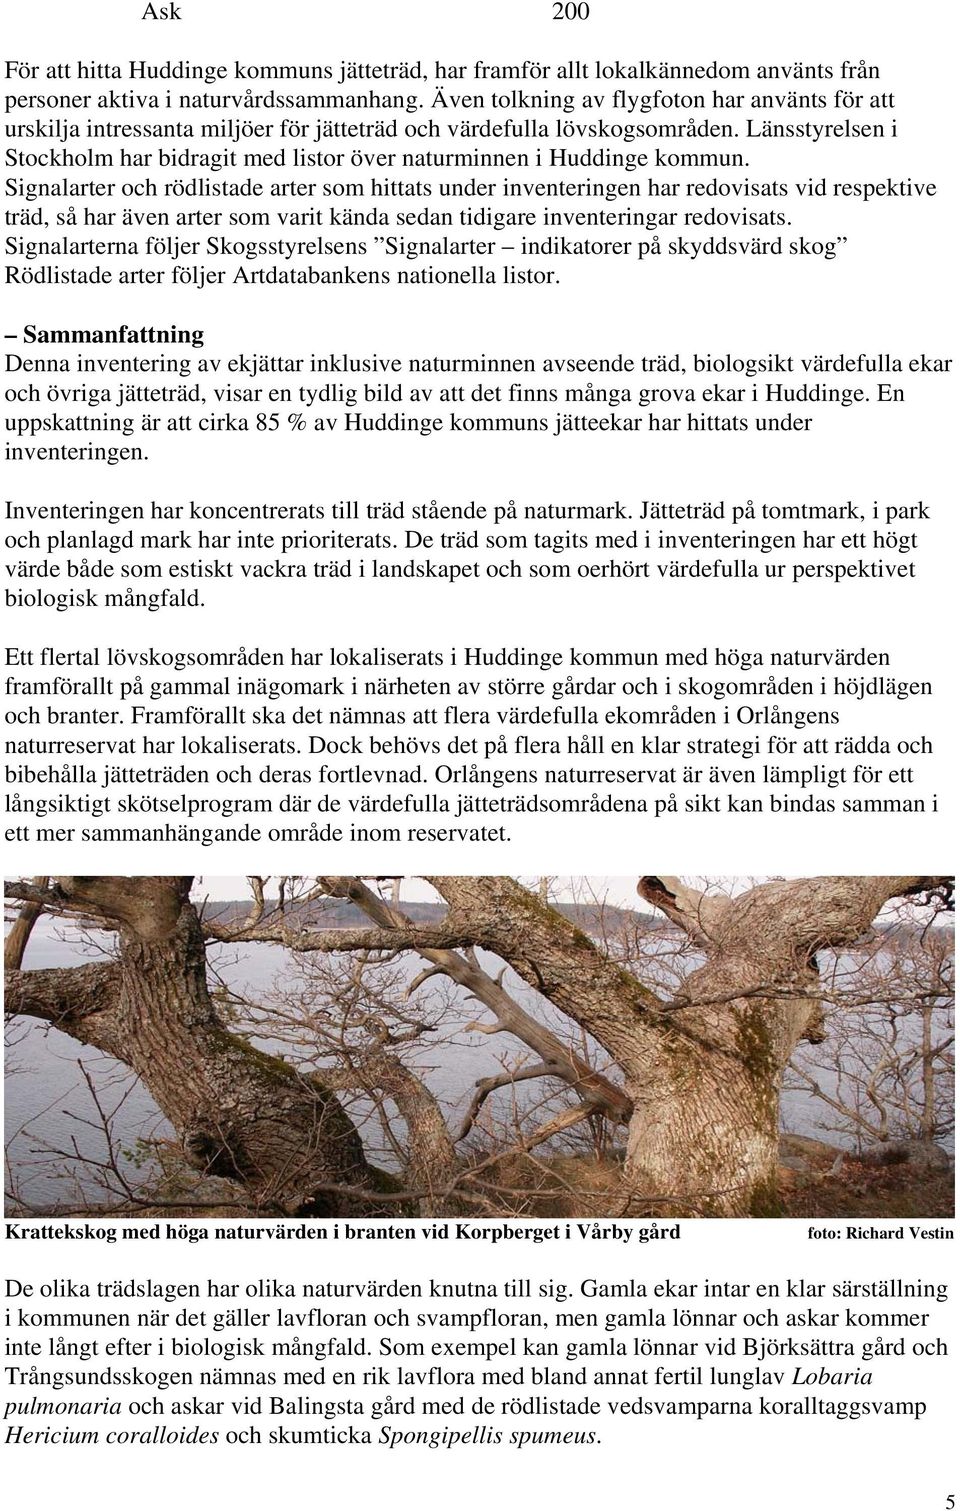 Länsstyrelsen i Stockholm har bidragit med listor över naturminnen i Huddinge kommun.